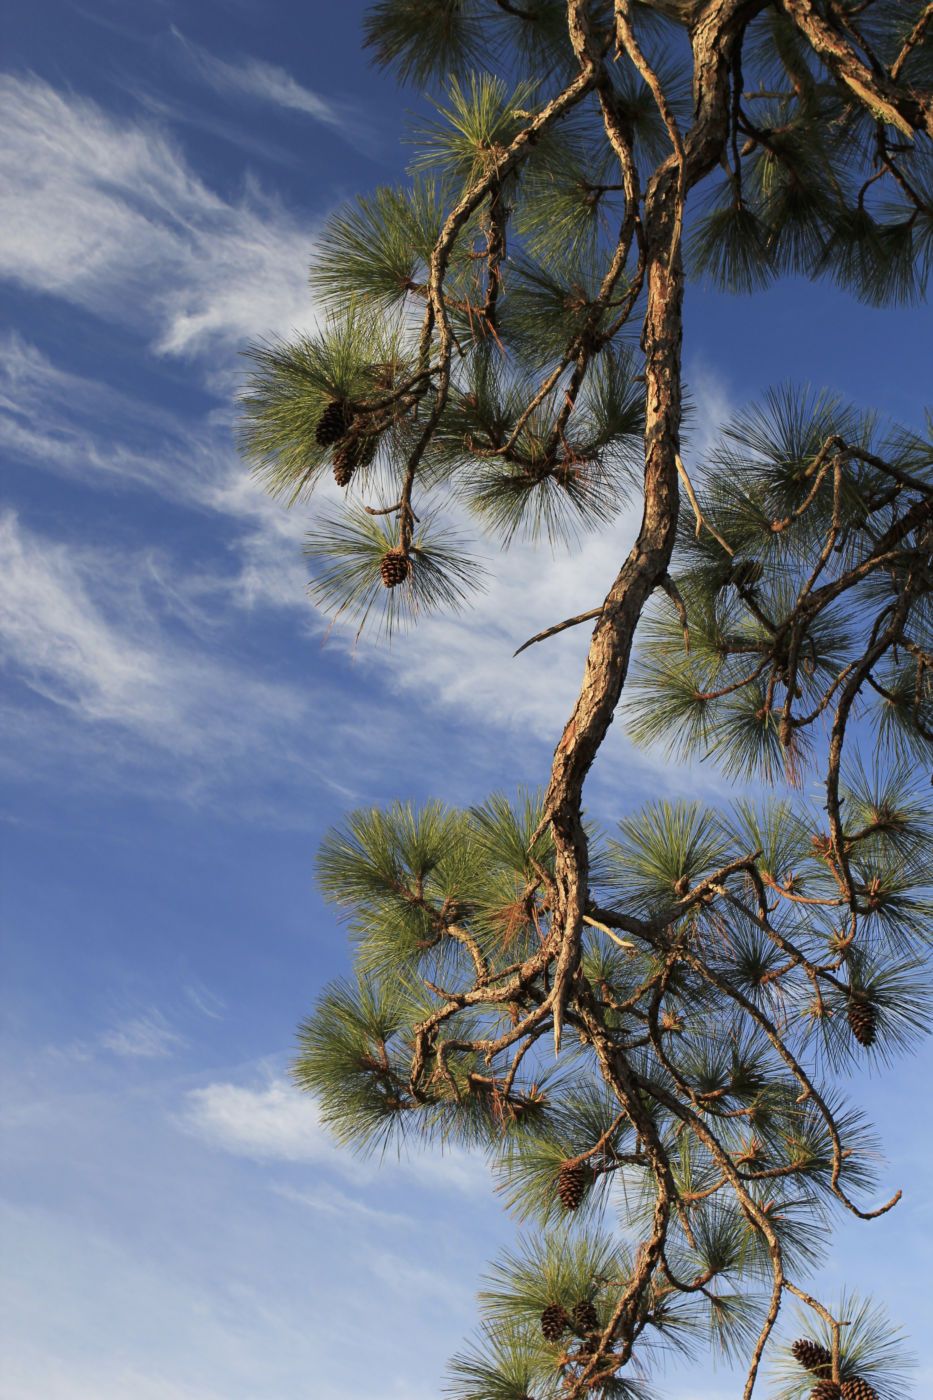 Longleaf pine (Pinus palustris)